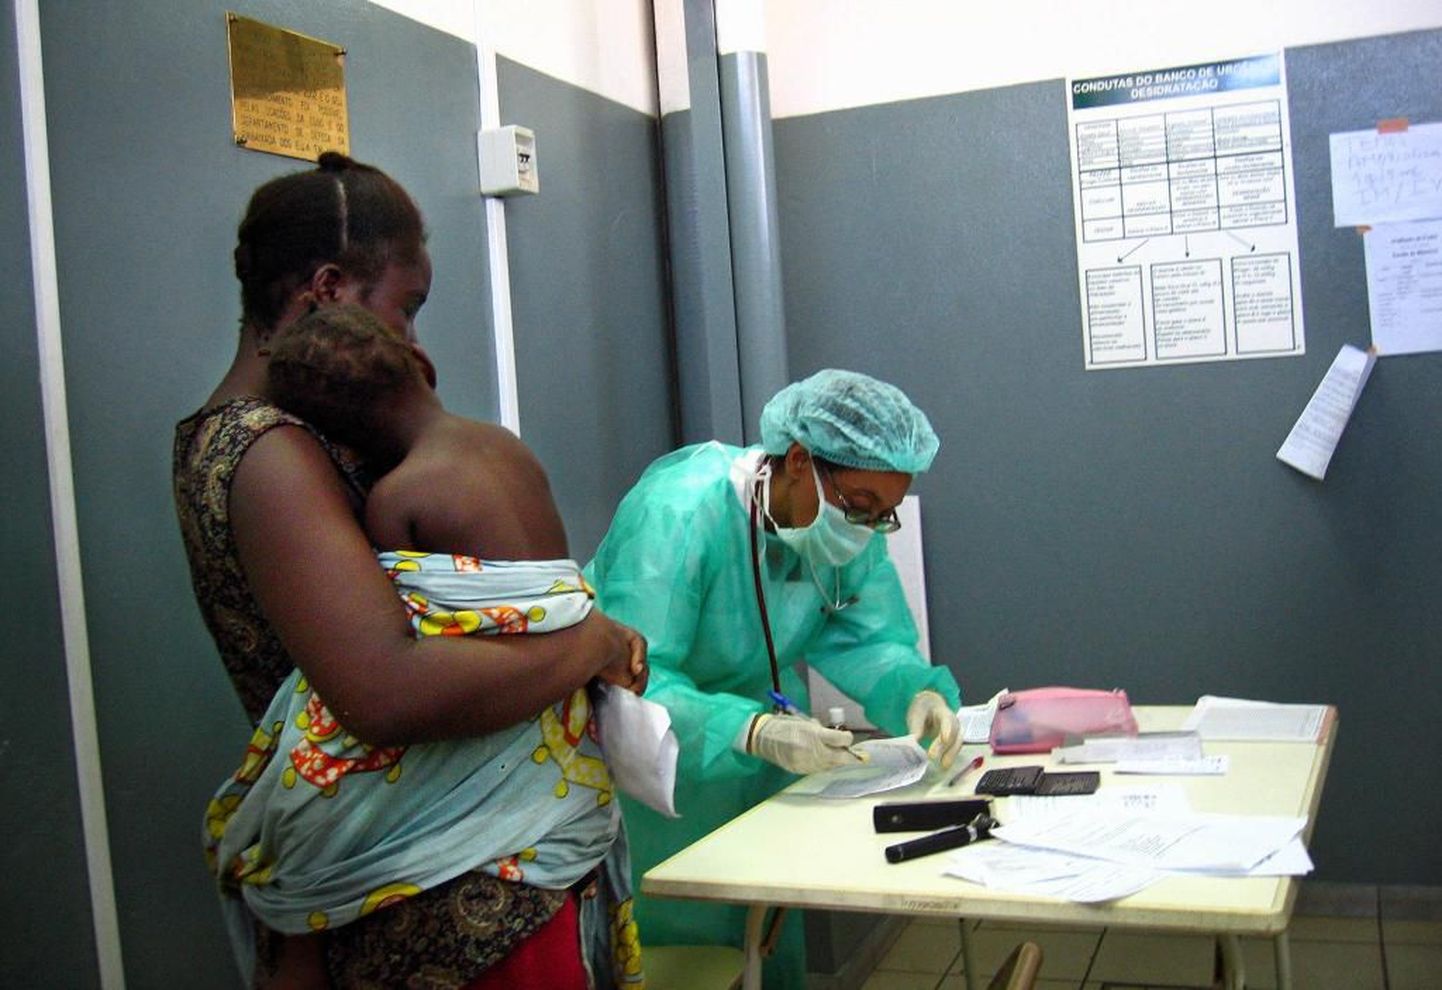 Spetsialistid hoiatavad, et Marburgi viirustõbi võib levida ka Angola naaberriikidesse.